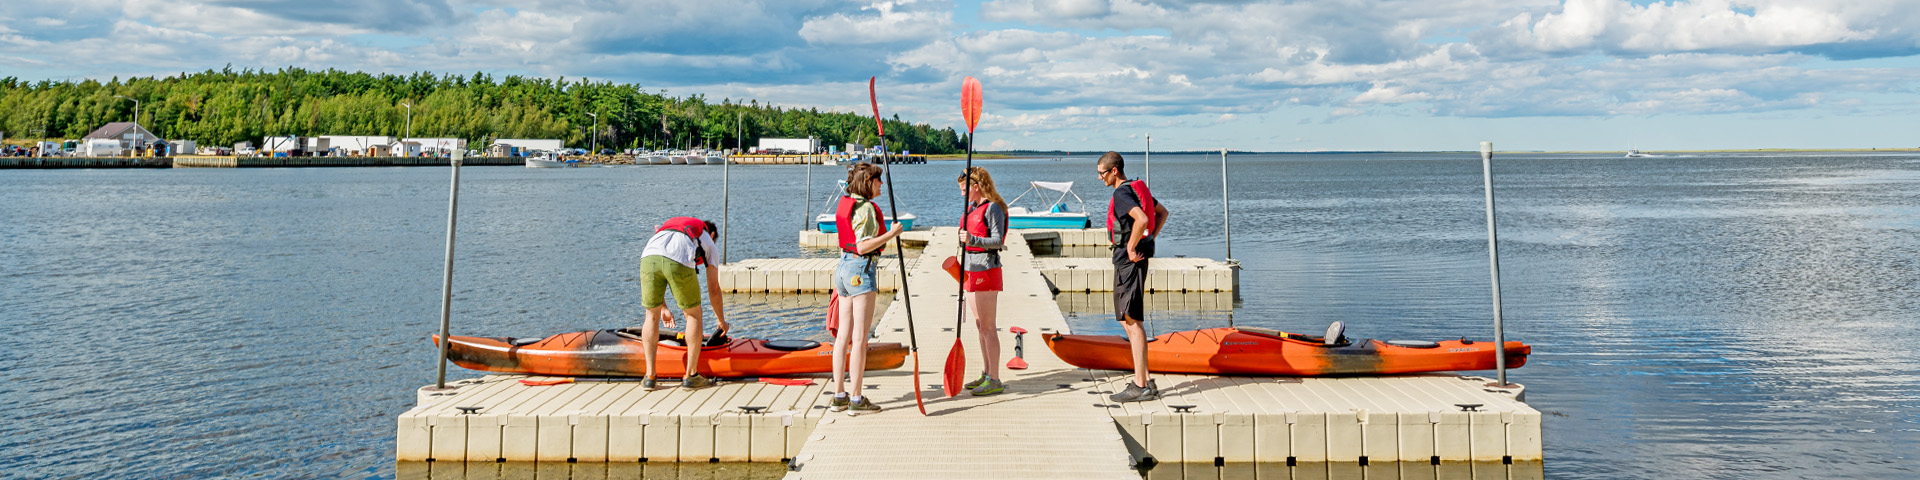 Des visiteurs tenant des rames près de leurs kayak, sur un quai flottant.